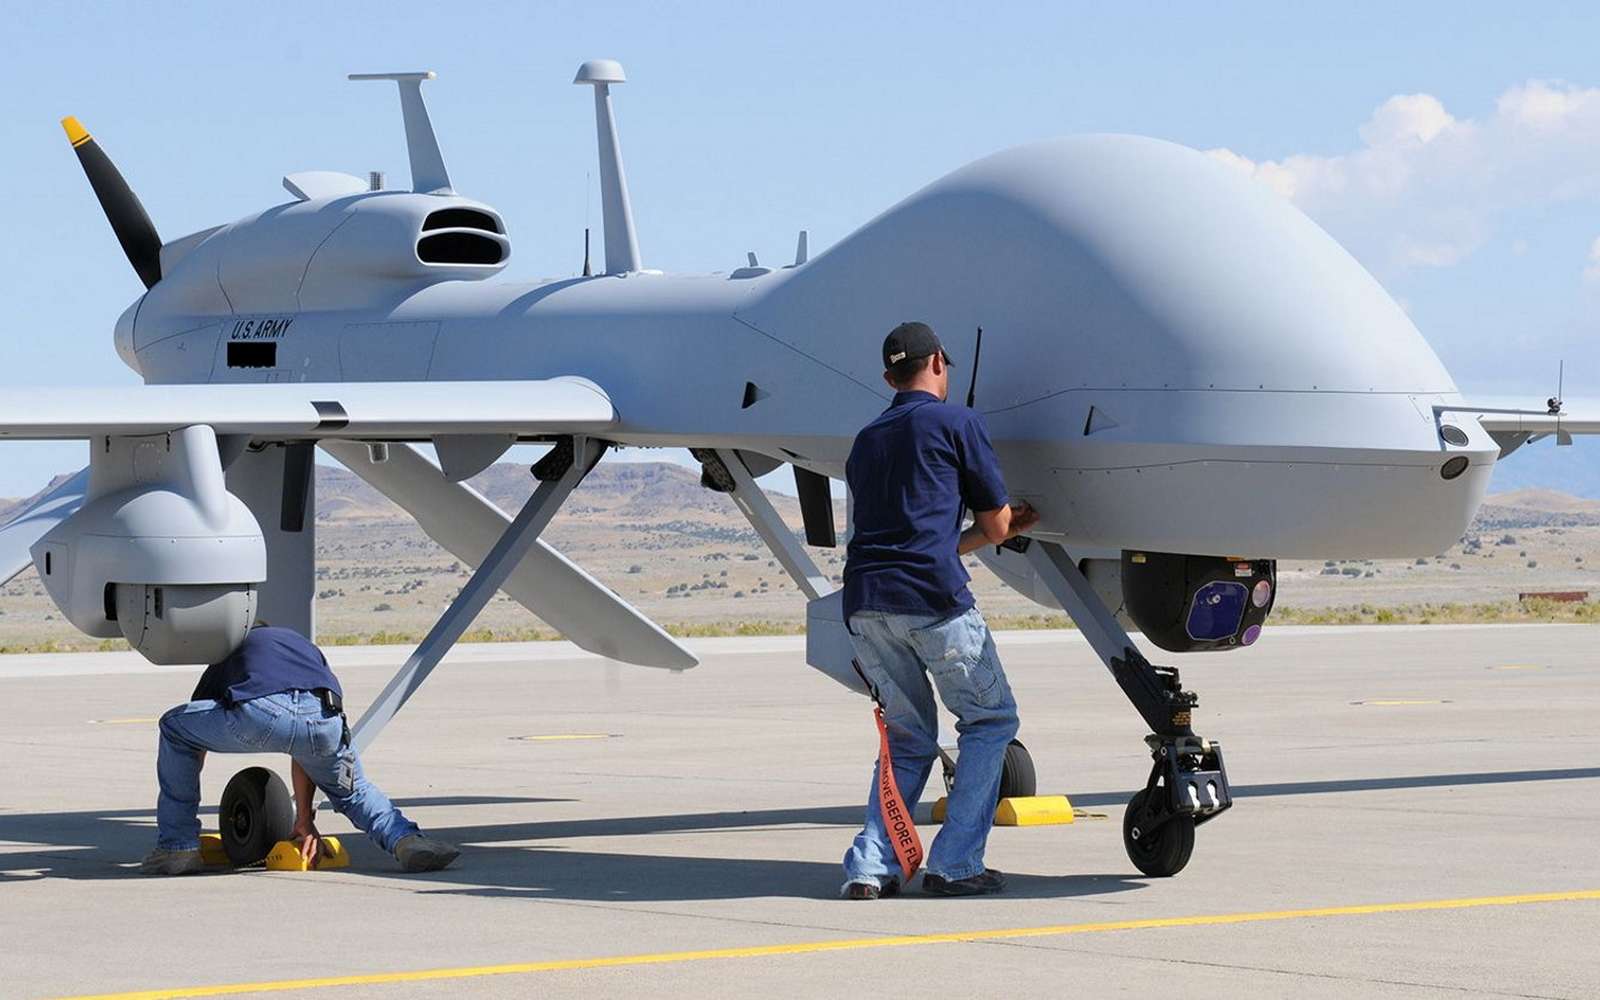 Les États-Unis comptent vendre quatre drones MQ-1C Gray Eagle à l’Ukraine. © US Army